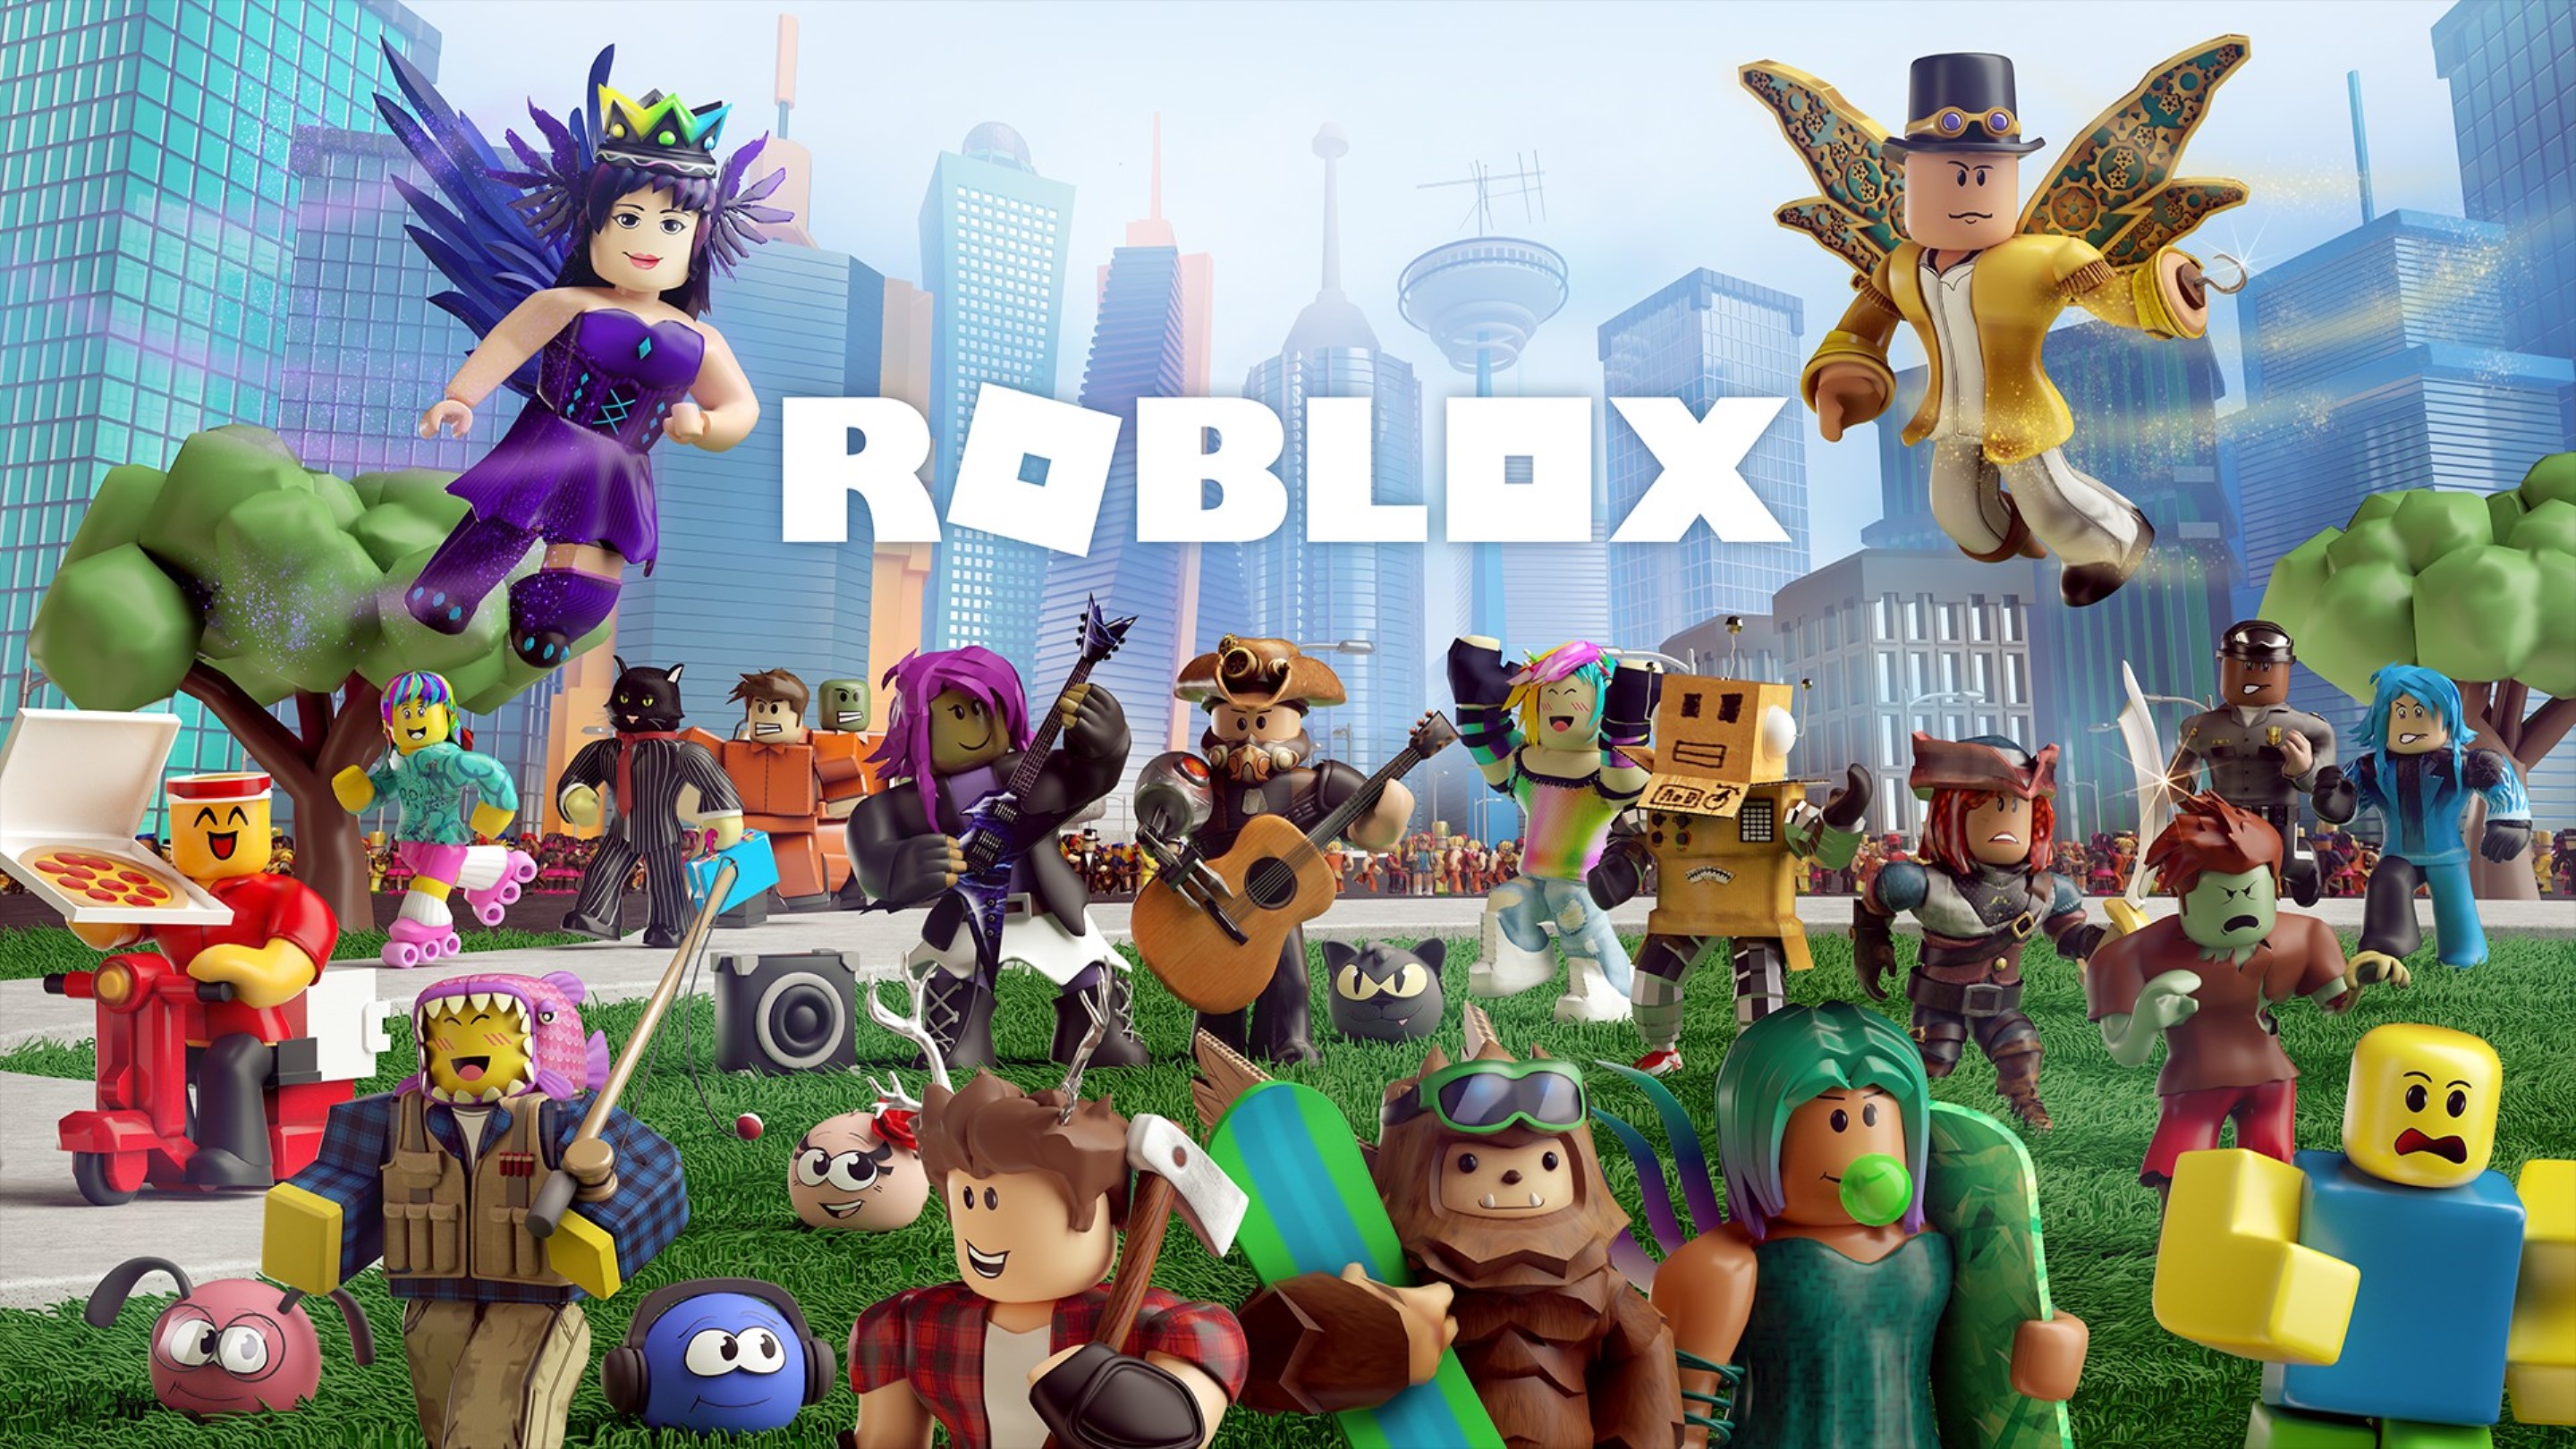 Todo de Roblox: Códigos y Trucos para conseguir robux gratis